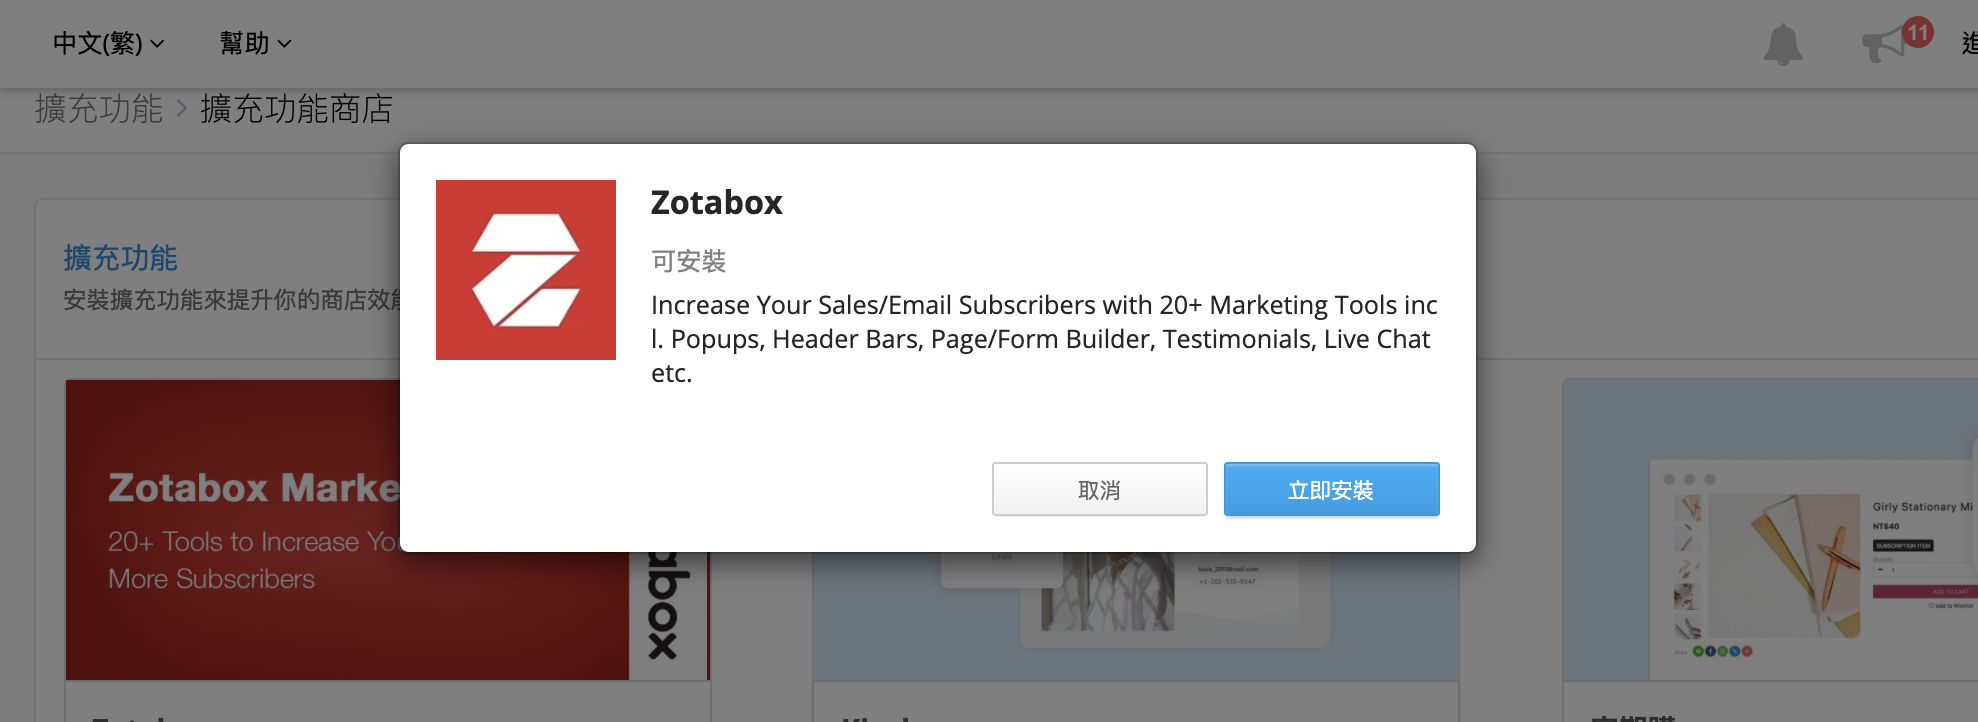 安裝 SHOPLINE 網店 Zotabox 工具